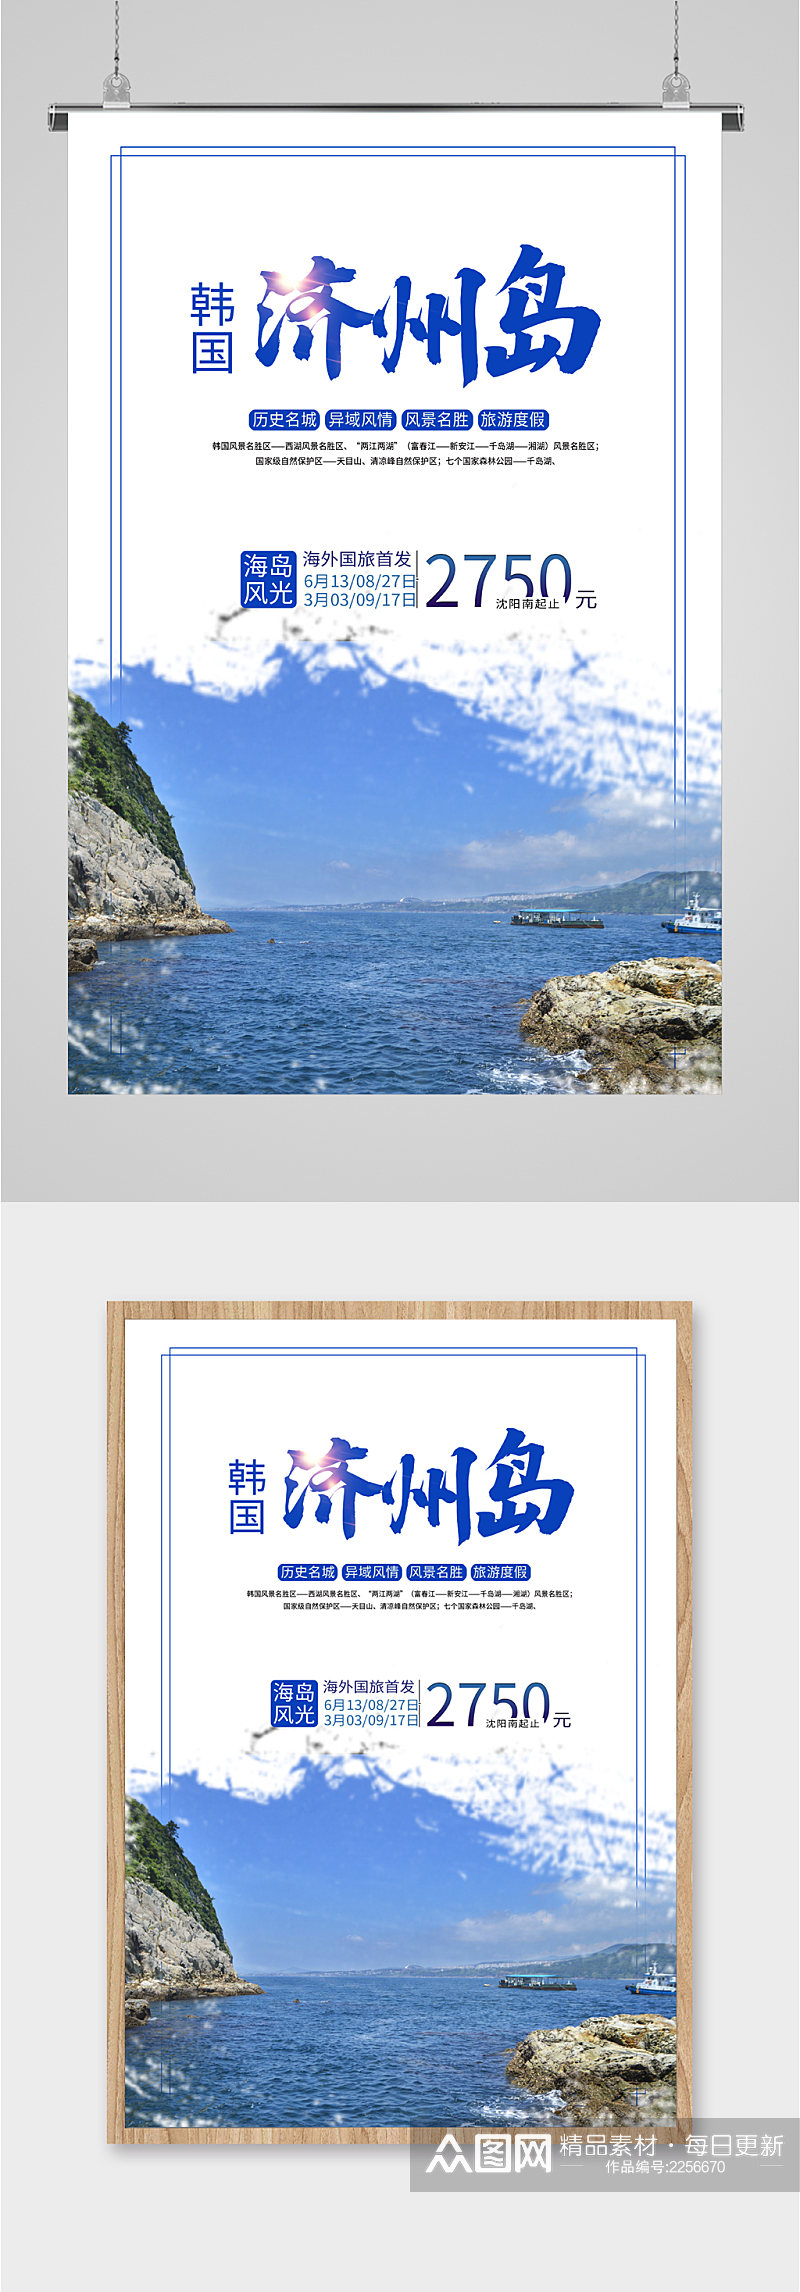 韩国济州岛旅游度假海报素材